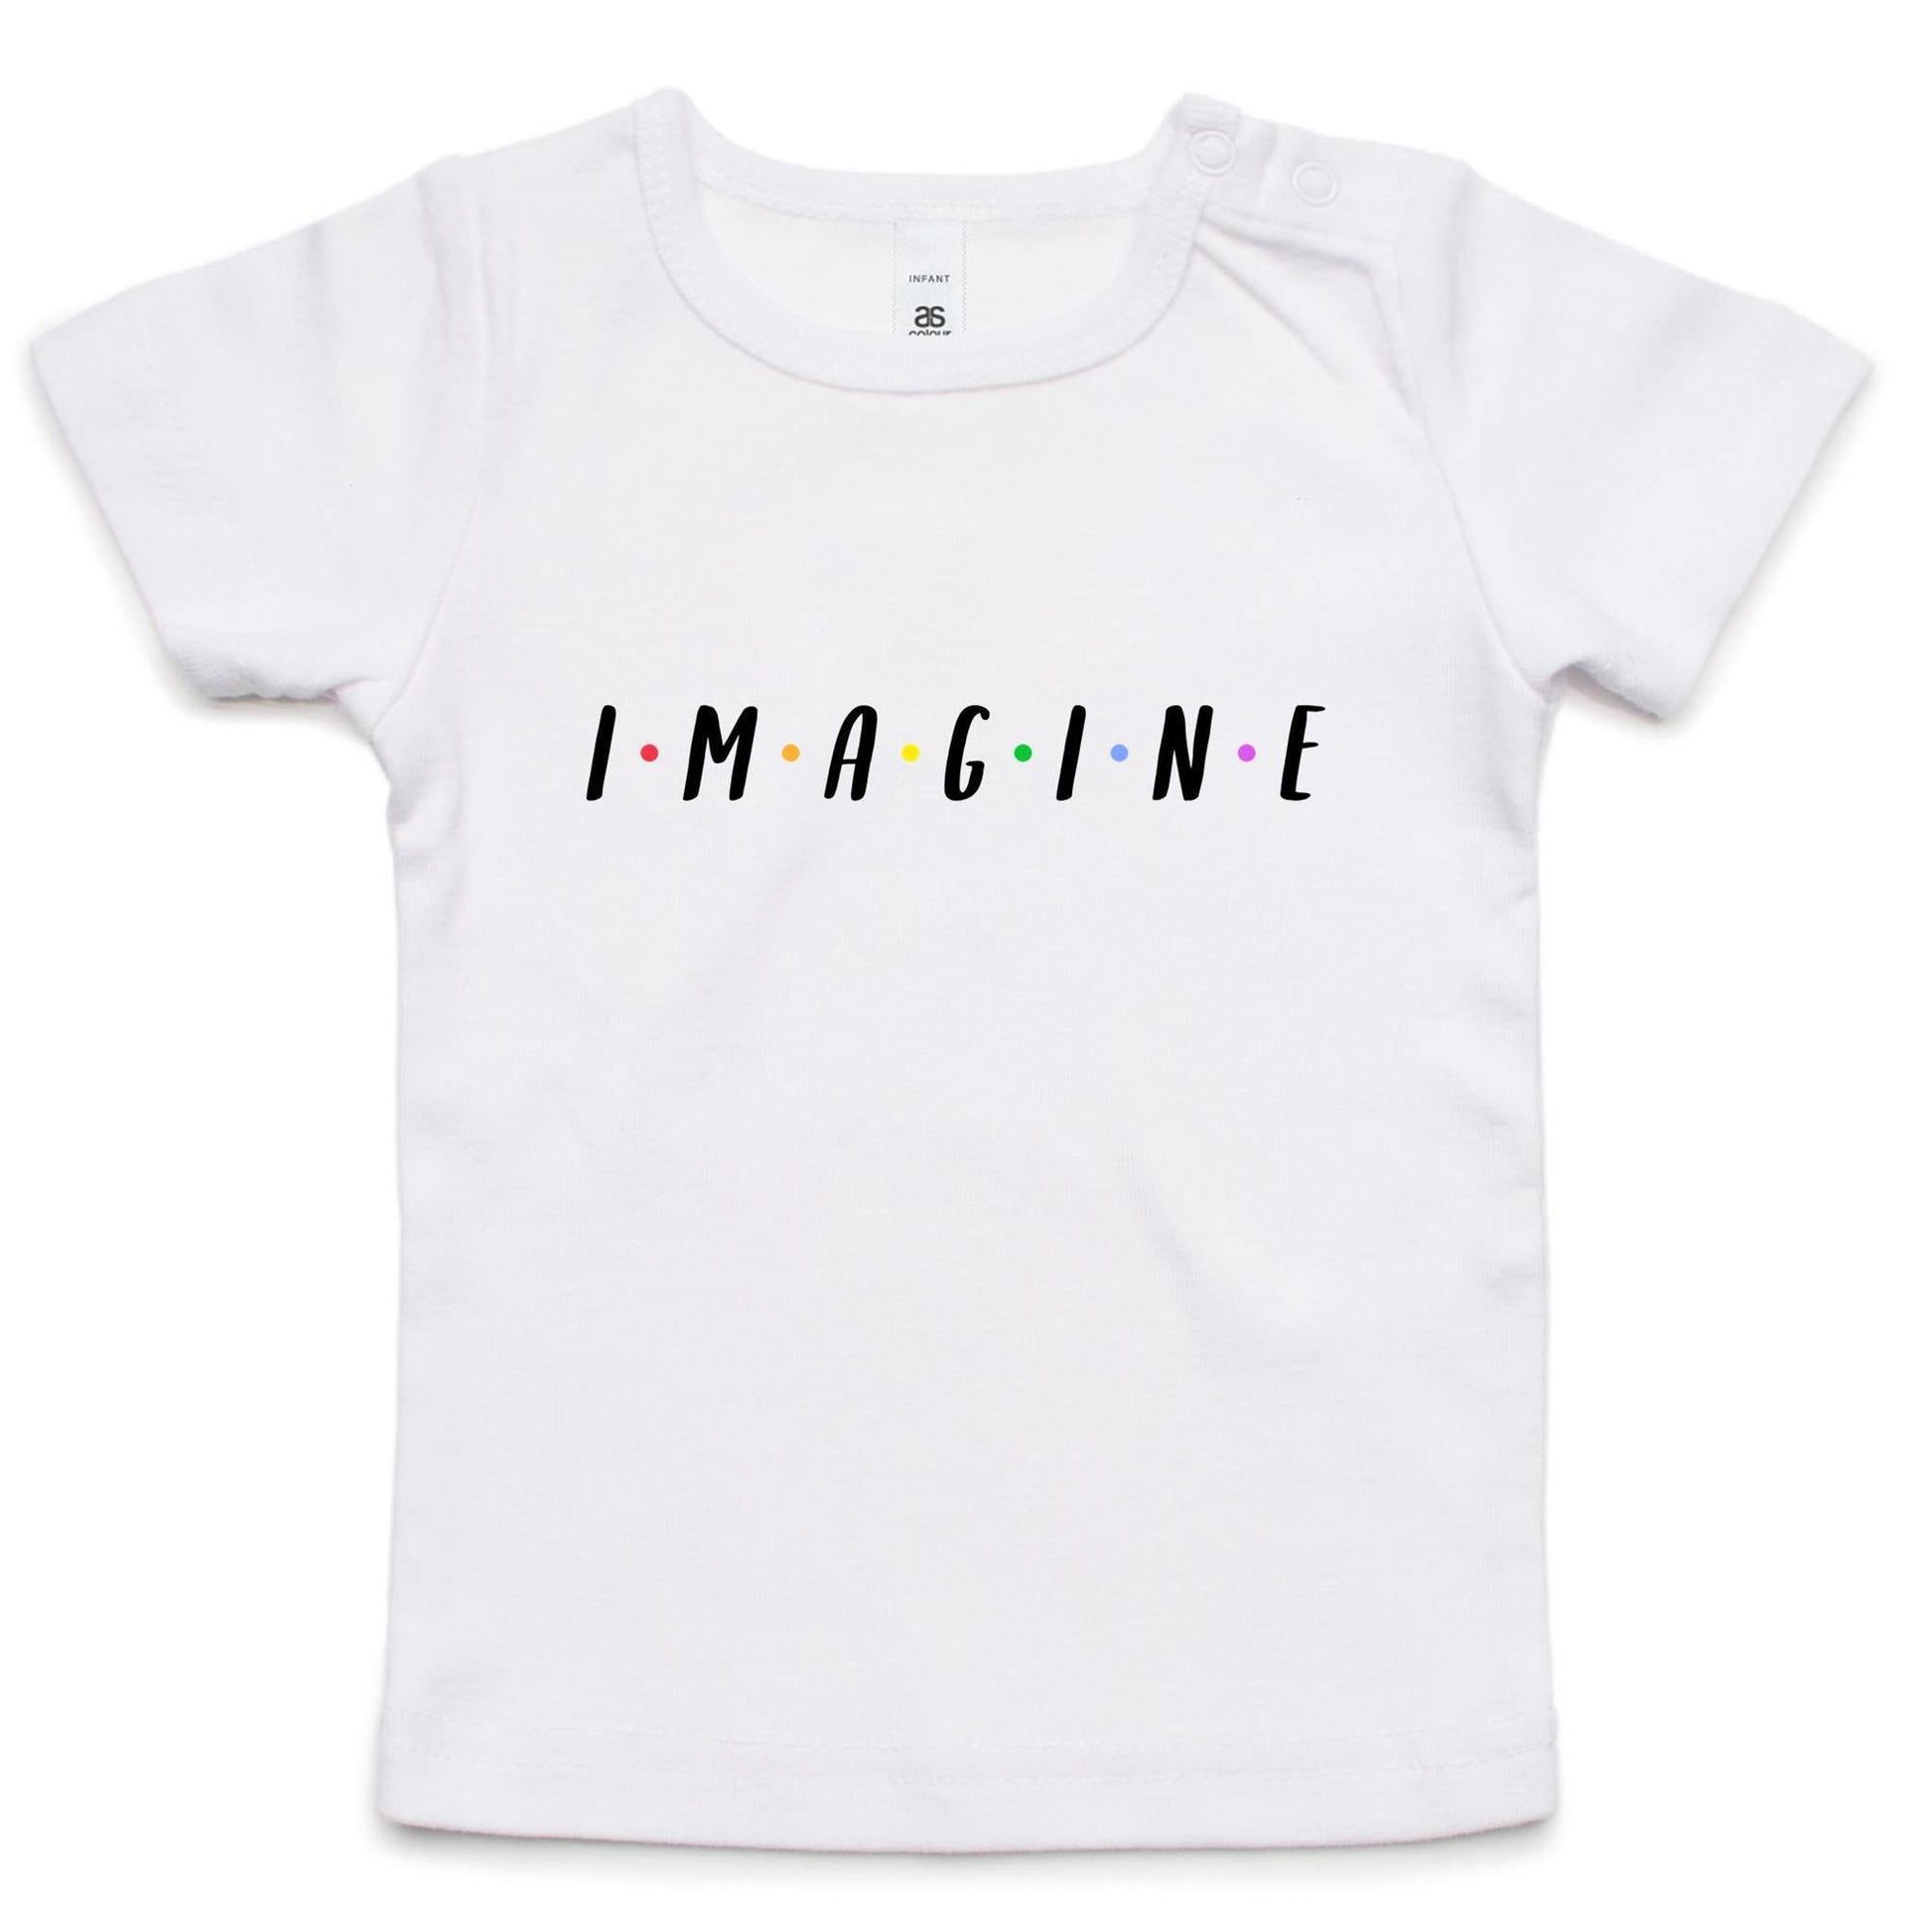 Imagine - Baby T-shirt White Baby T-shirt kids